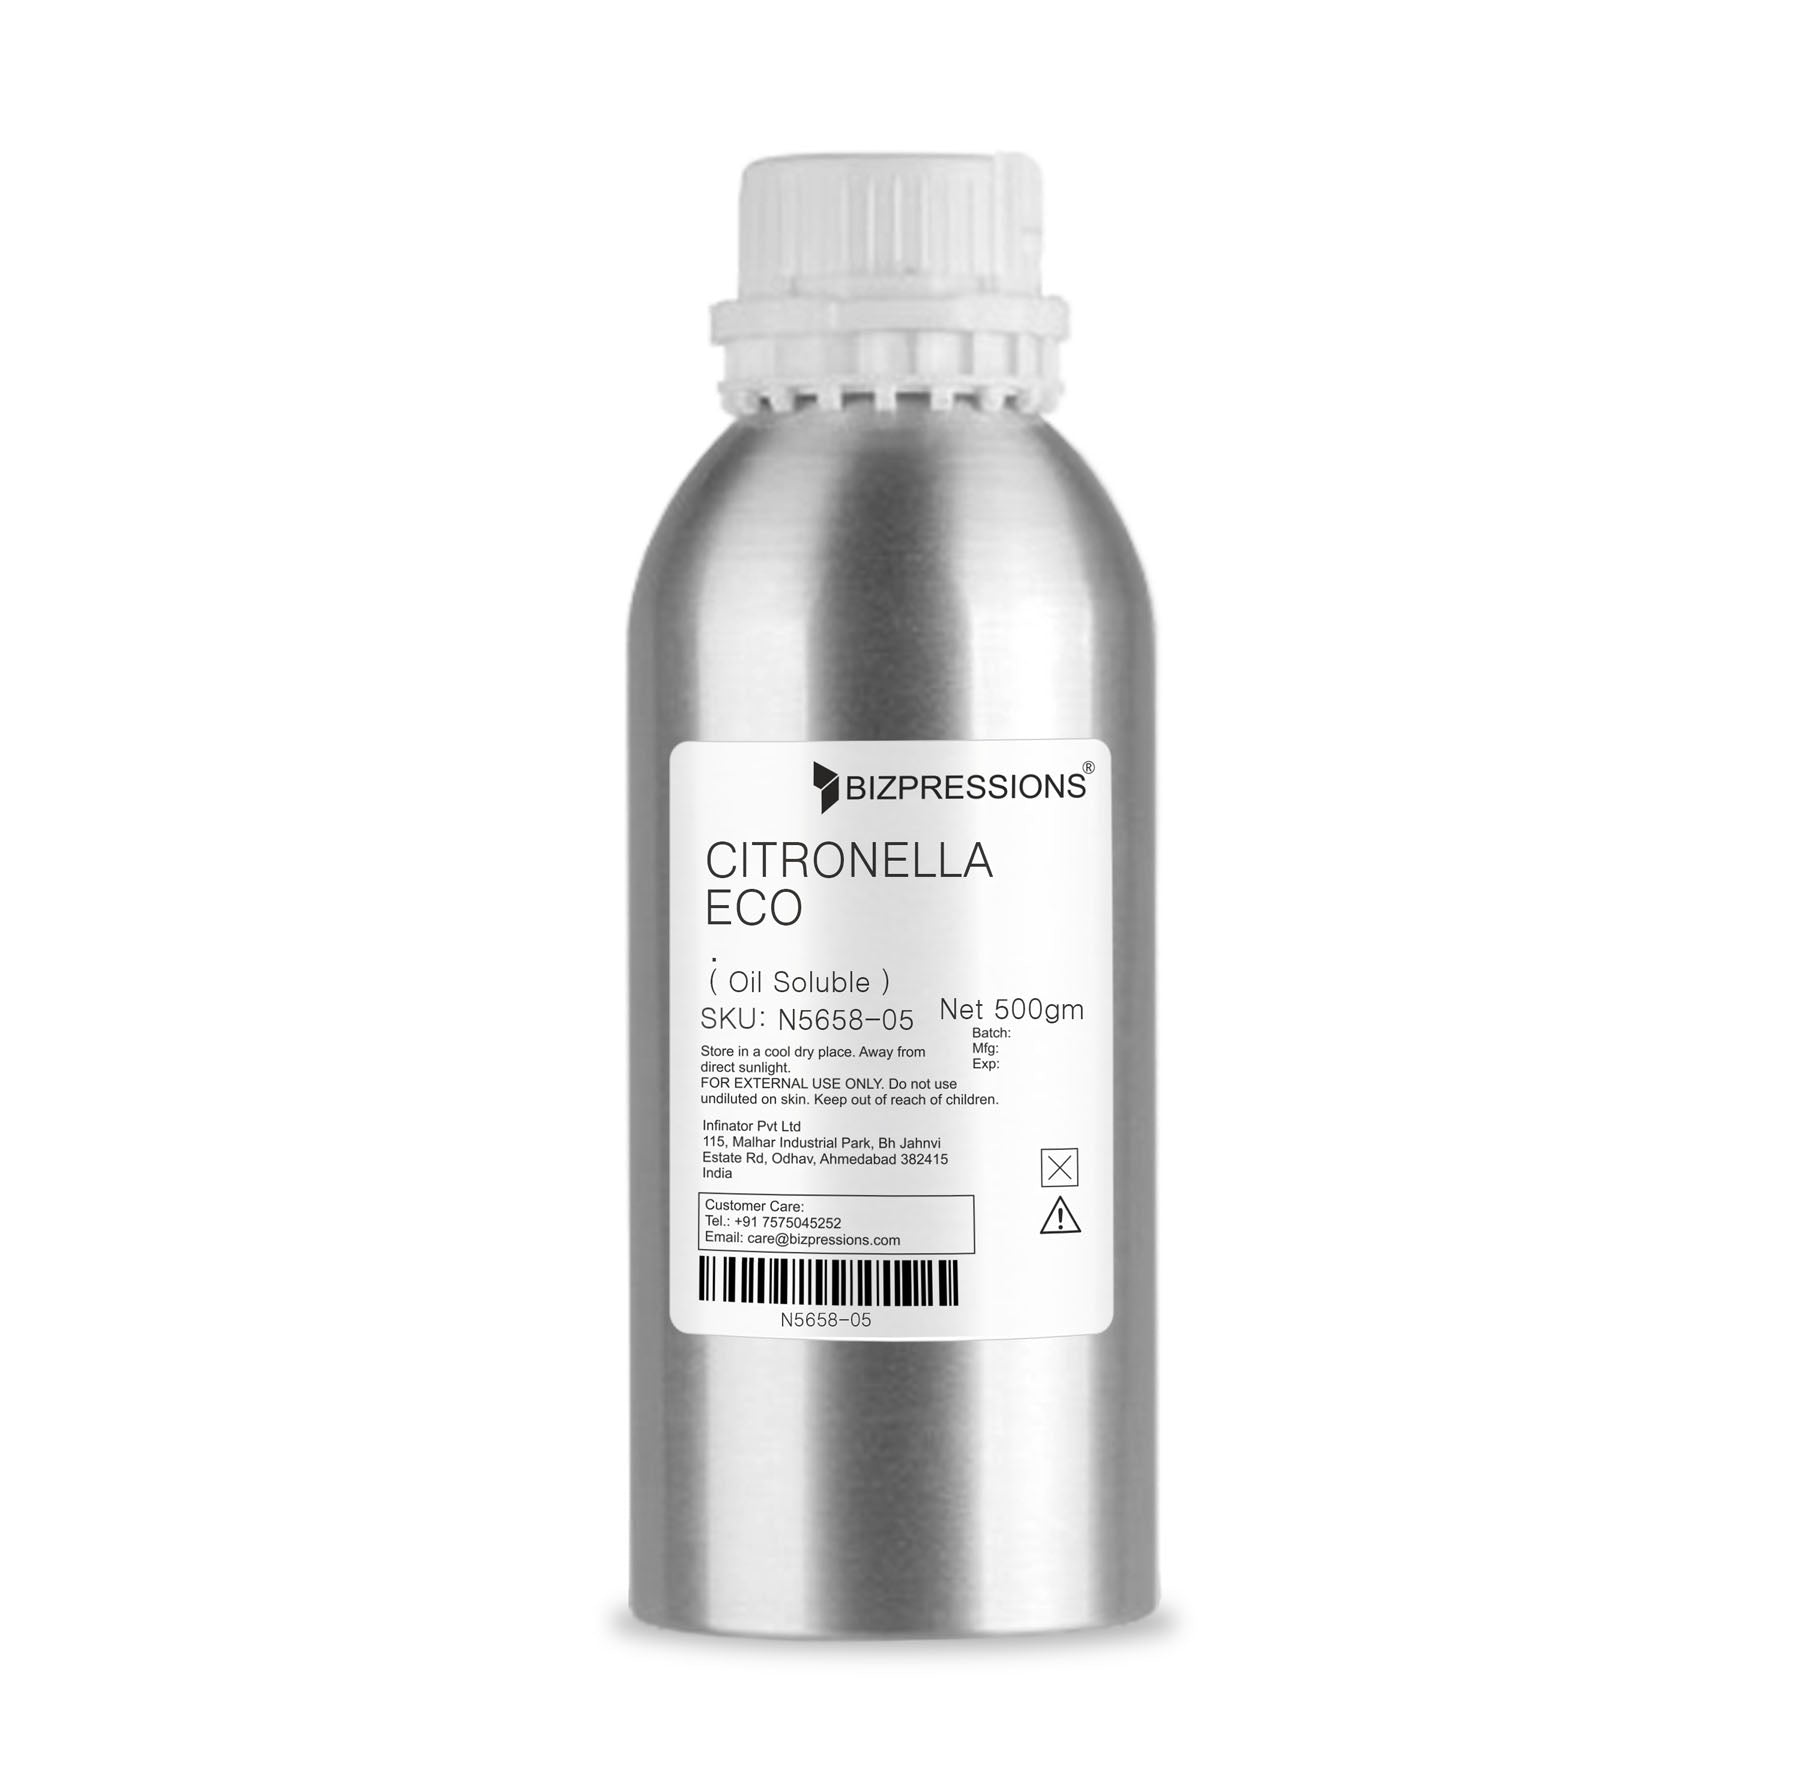 CITRONELLA ECO - Fragrance ( Oil Soluble ) - 500 gm